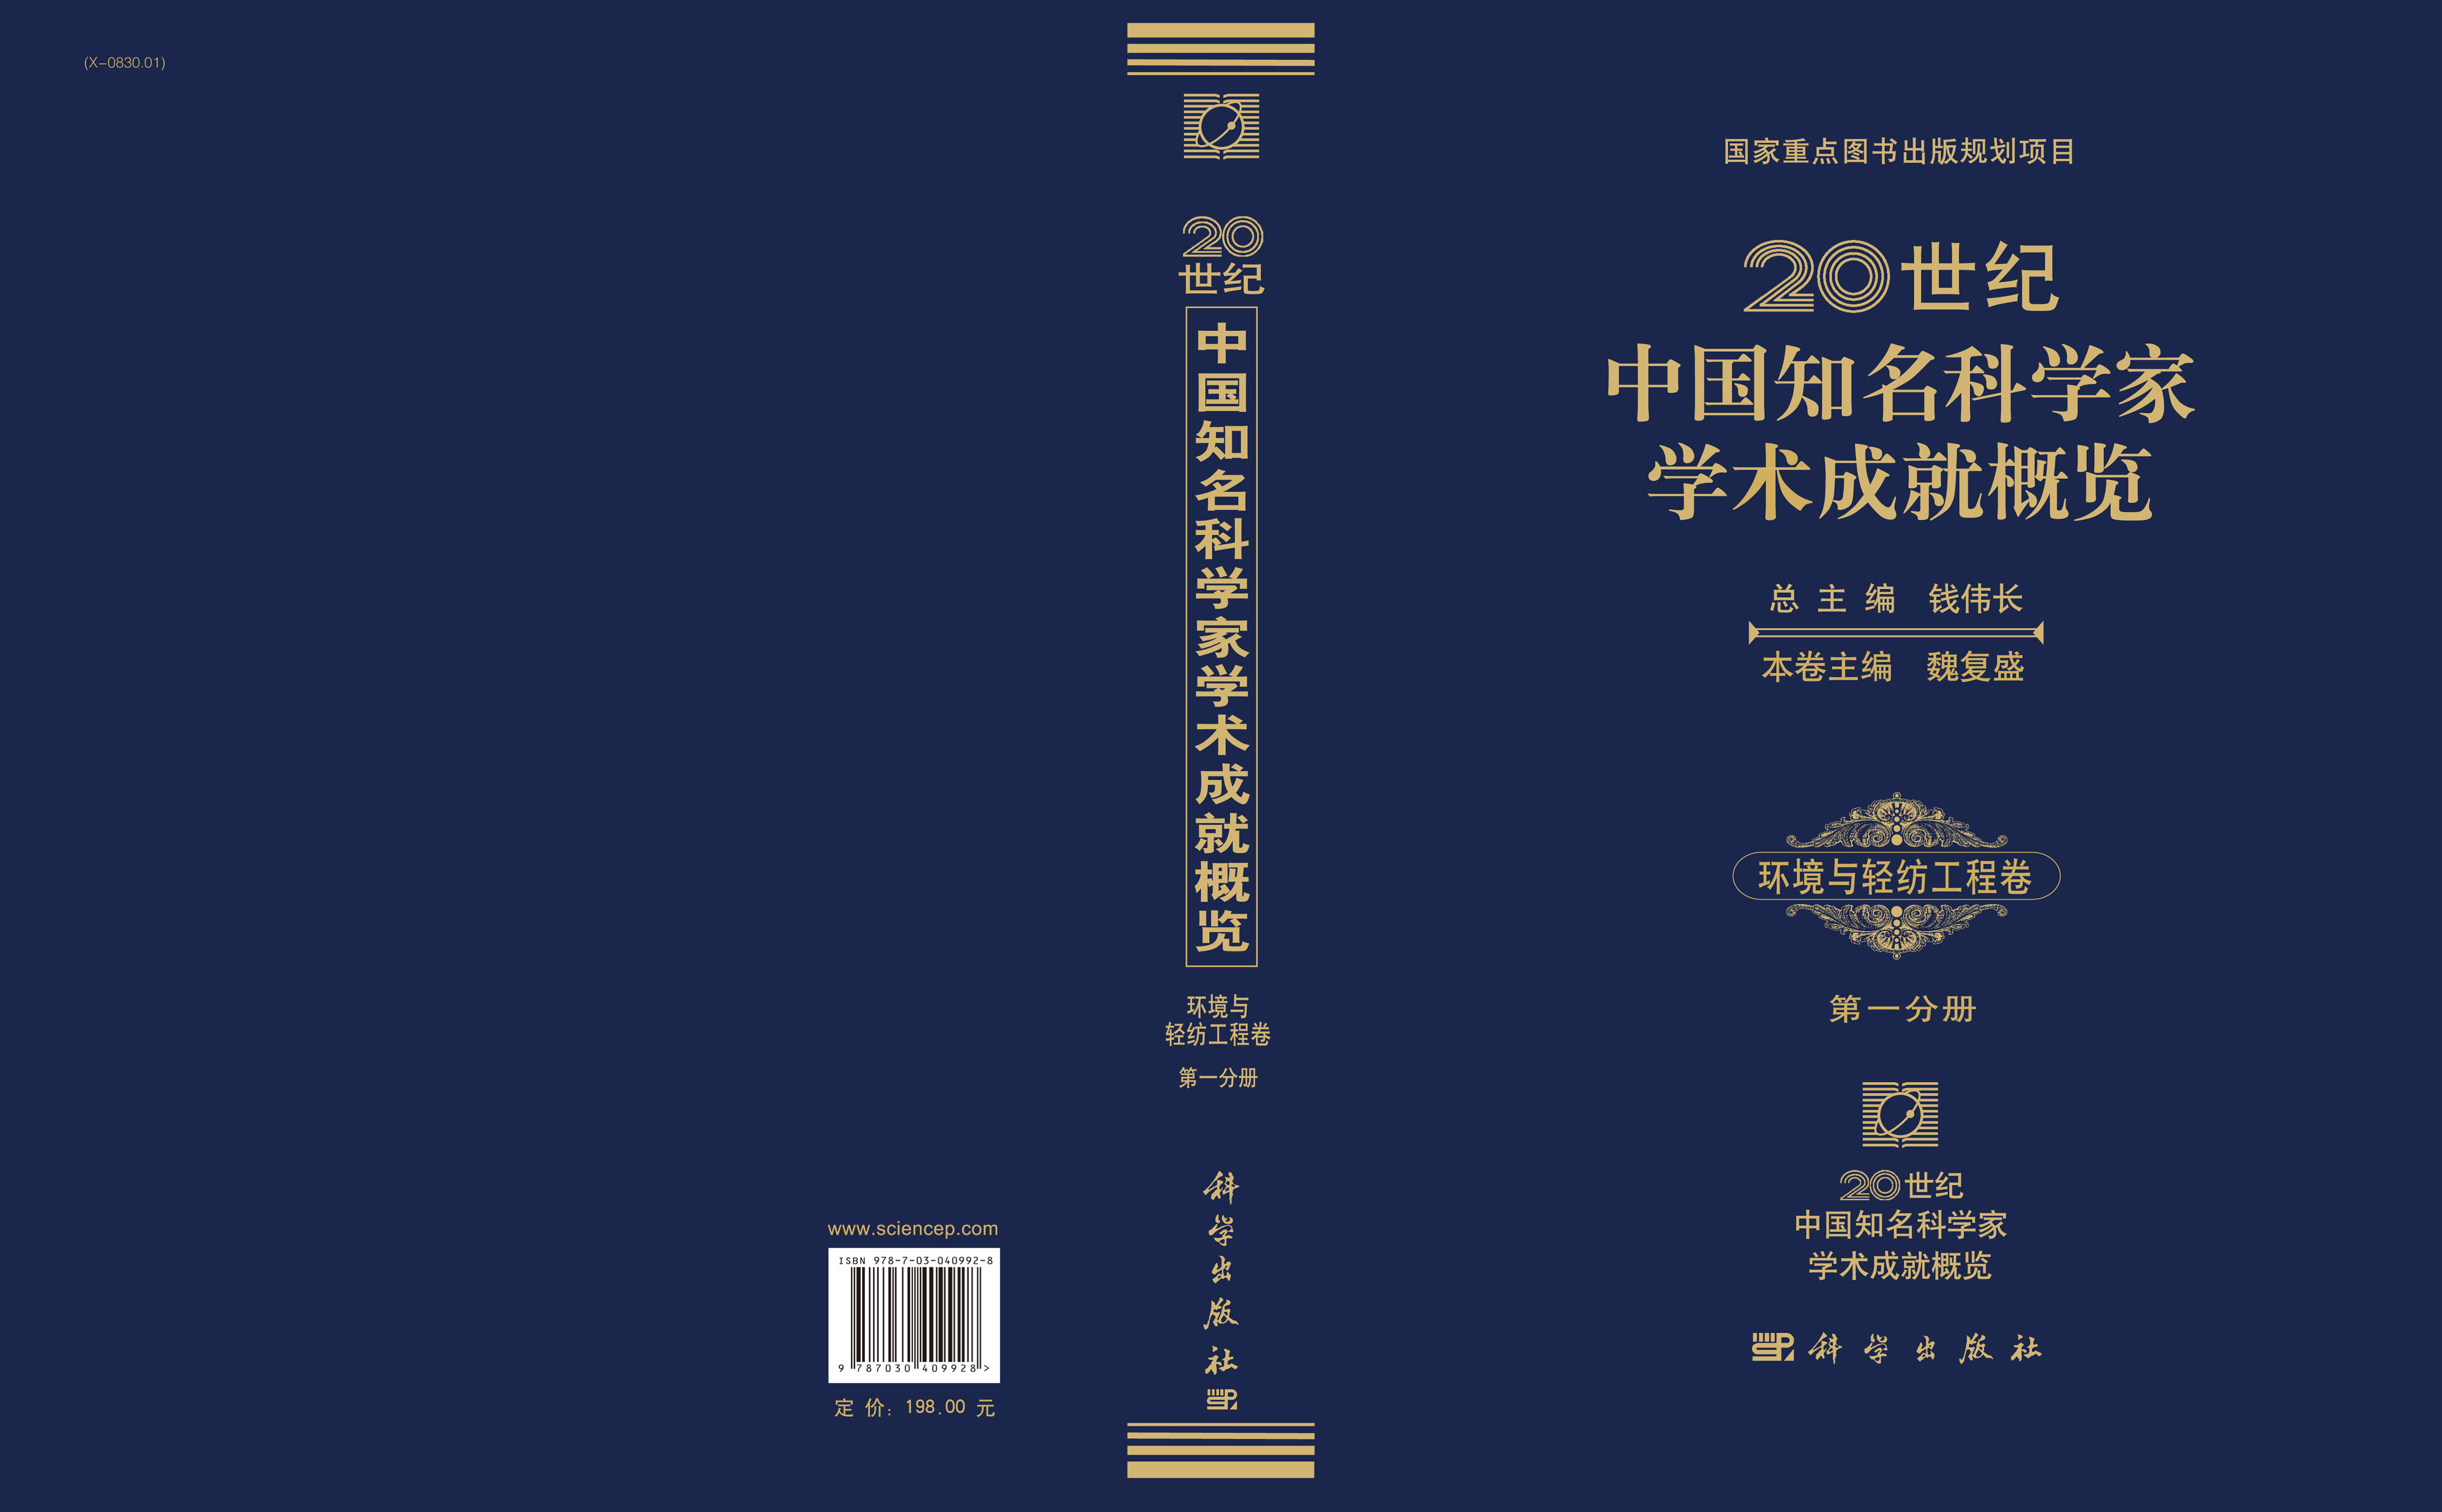 20世纪中国知名科学家学术成就概览・环境与轻纺工程卷・第一分册